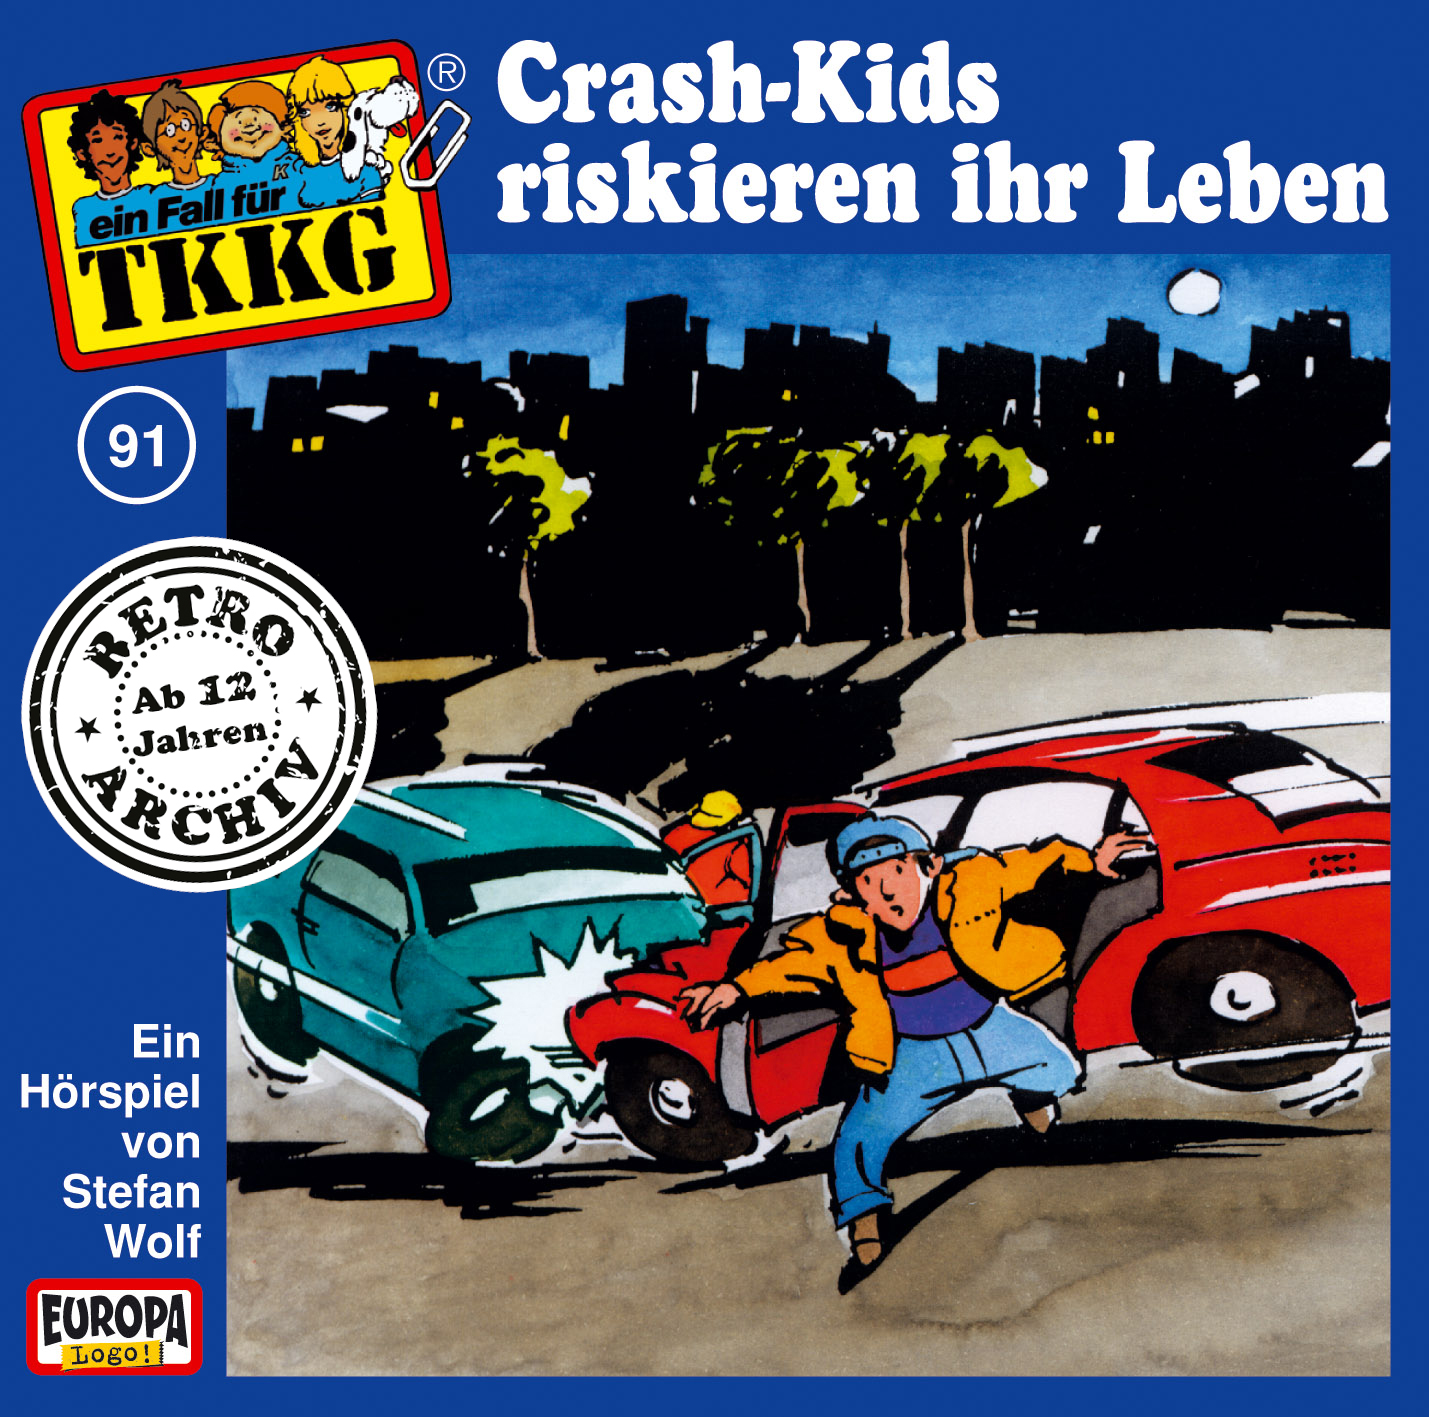 TKKG Retro-Archiv: Crash-Kids riskieren ihr Leben